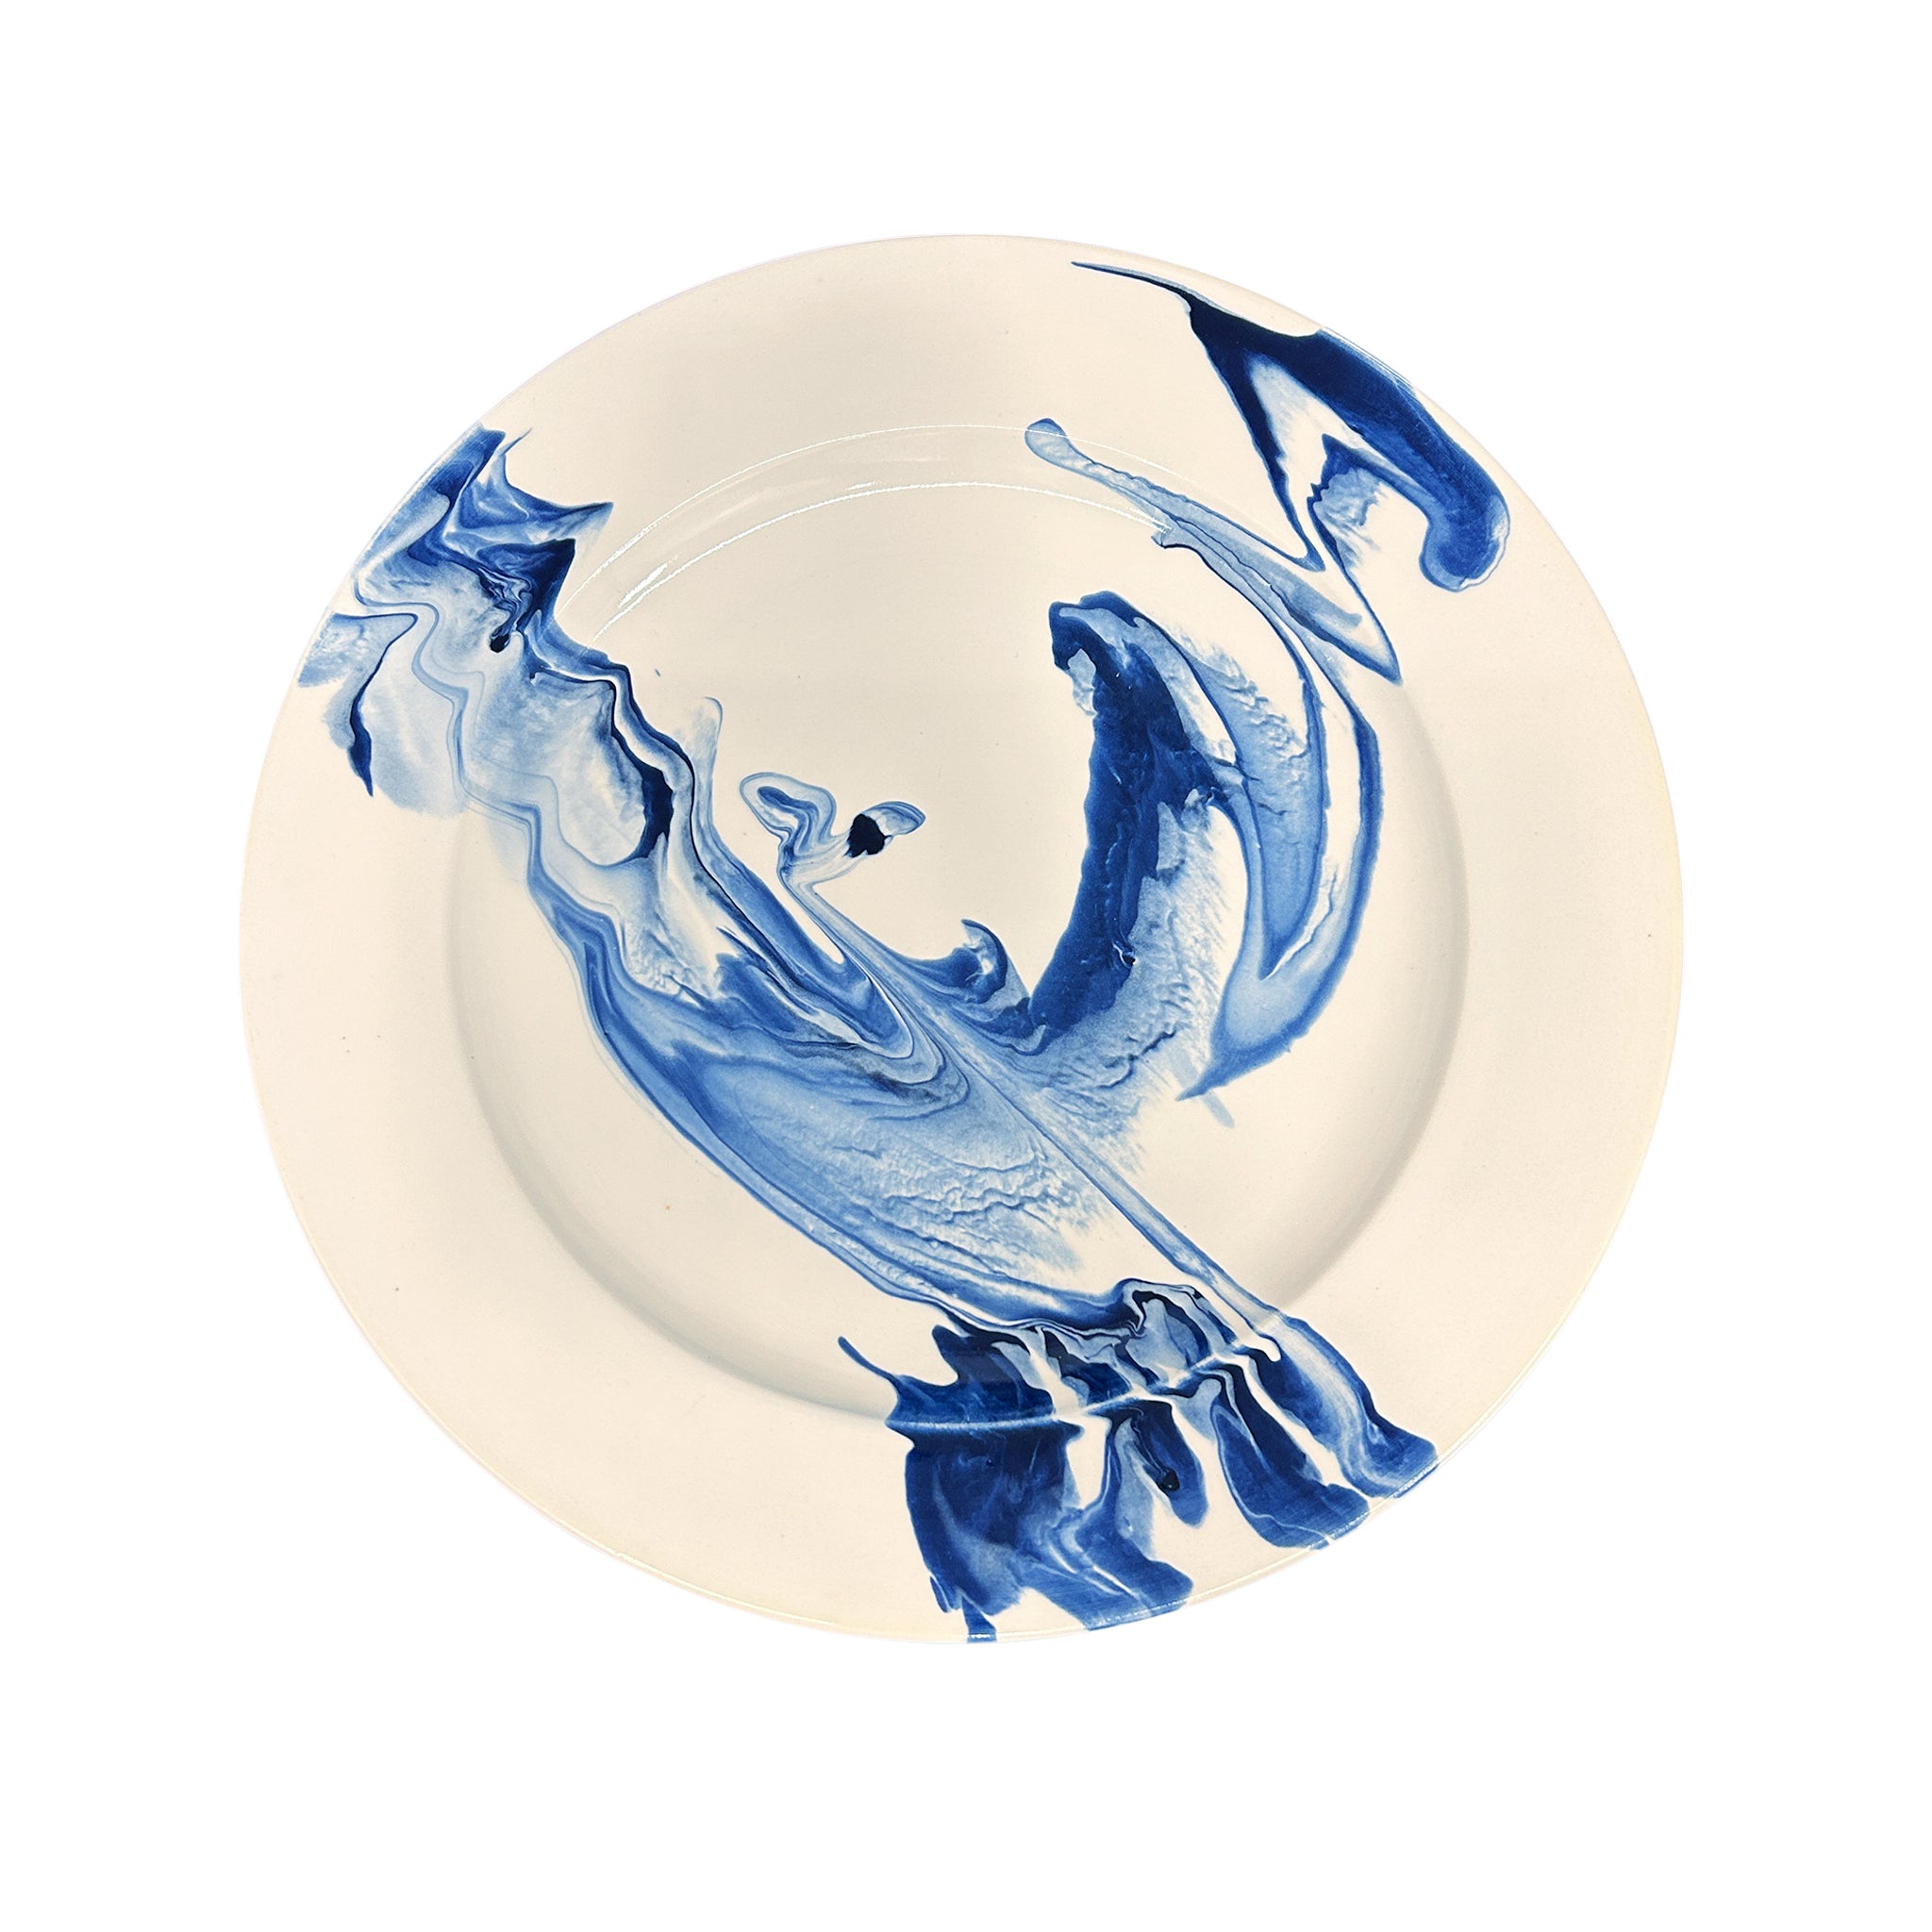 Set of 10 Marbleized Dinner Plates in Deflt Blue Marble